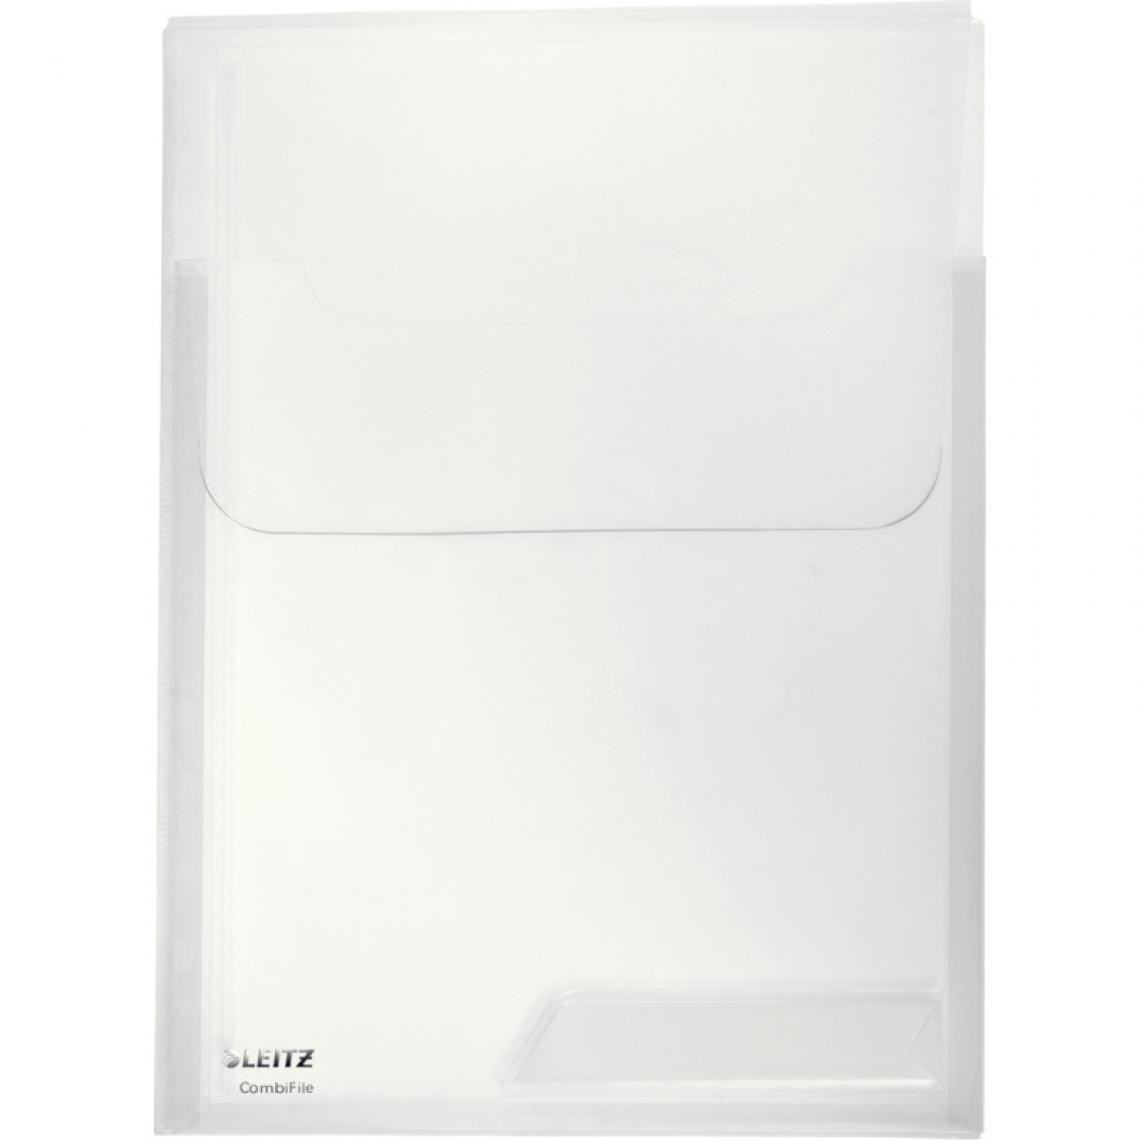 Leitz - LEITZ pochette perforée / porte document CombiFile Maxi, () - Accessoires Bureau